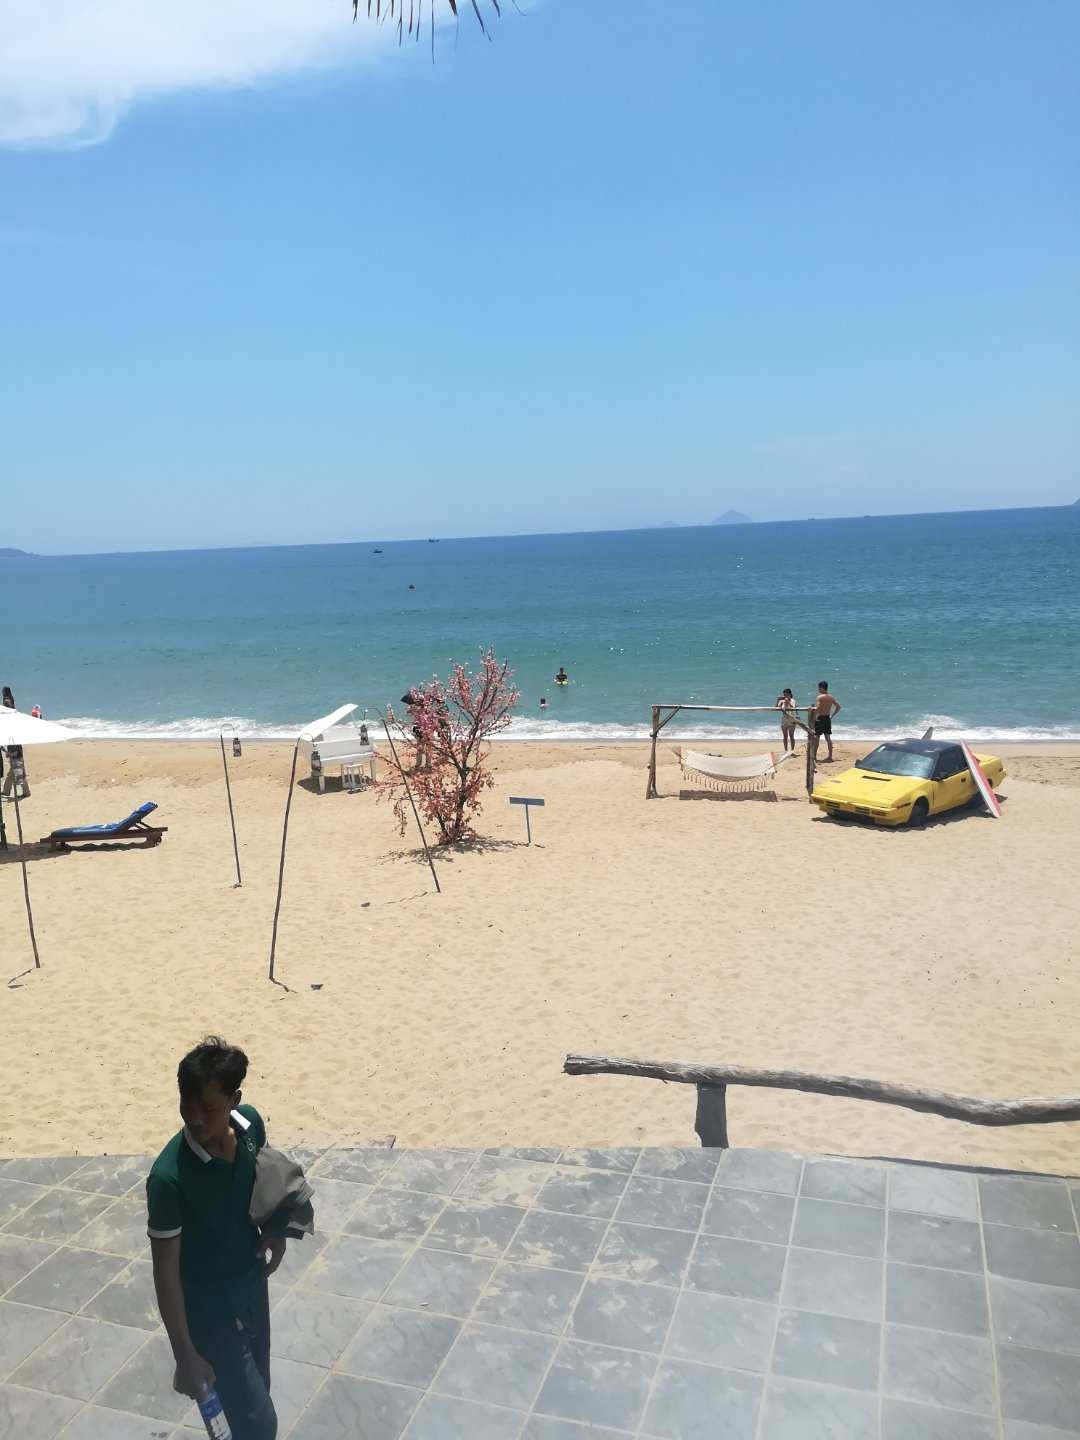 #海岛度假村首选 来到越南芽庄发现大自然的美，清澈的海水，湛蓝的天空。走在柔软的沙滩上享受着大自然带